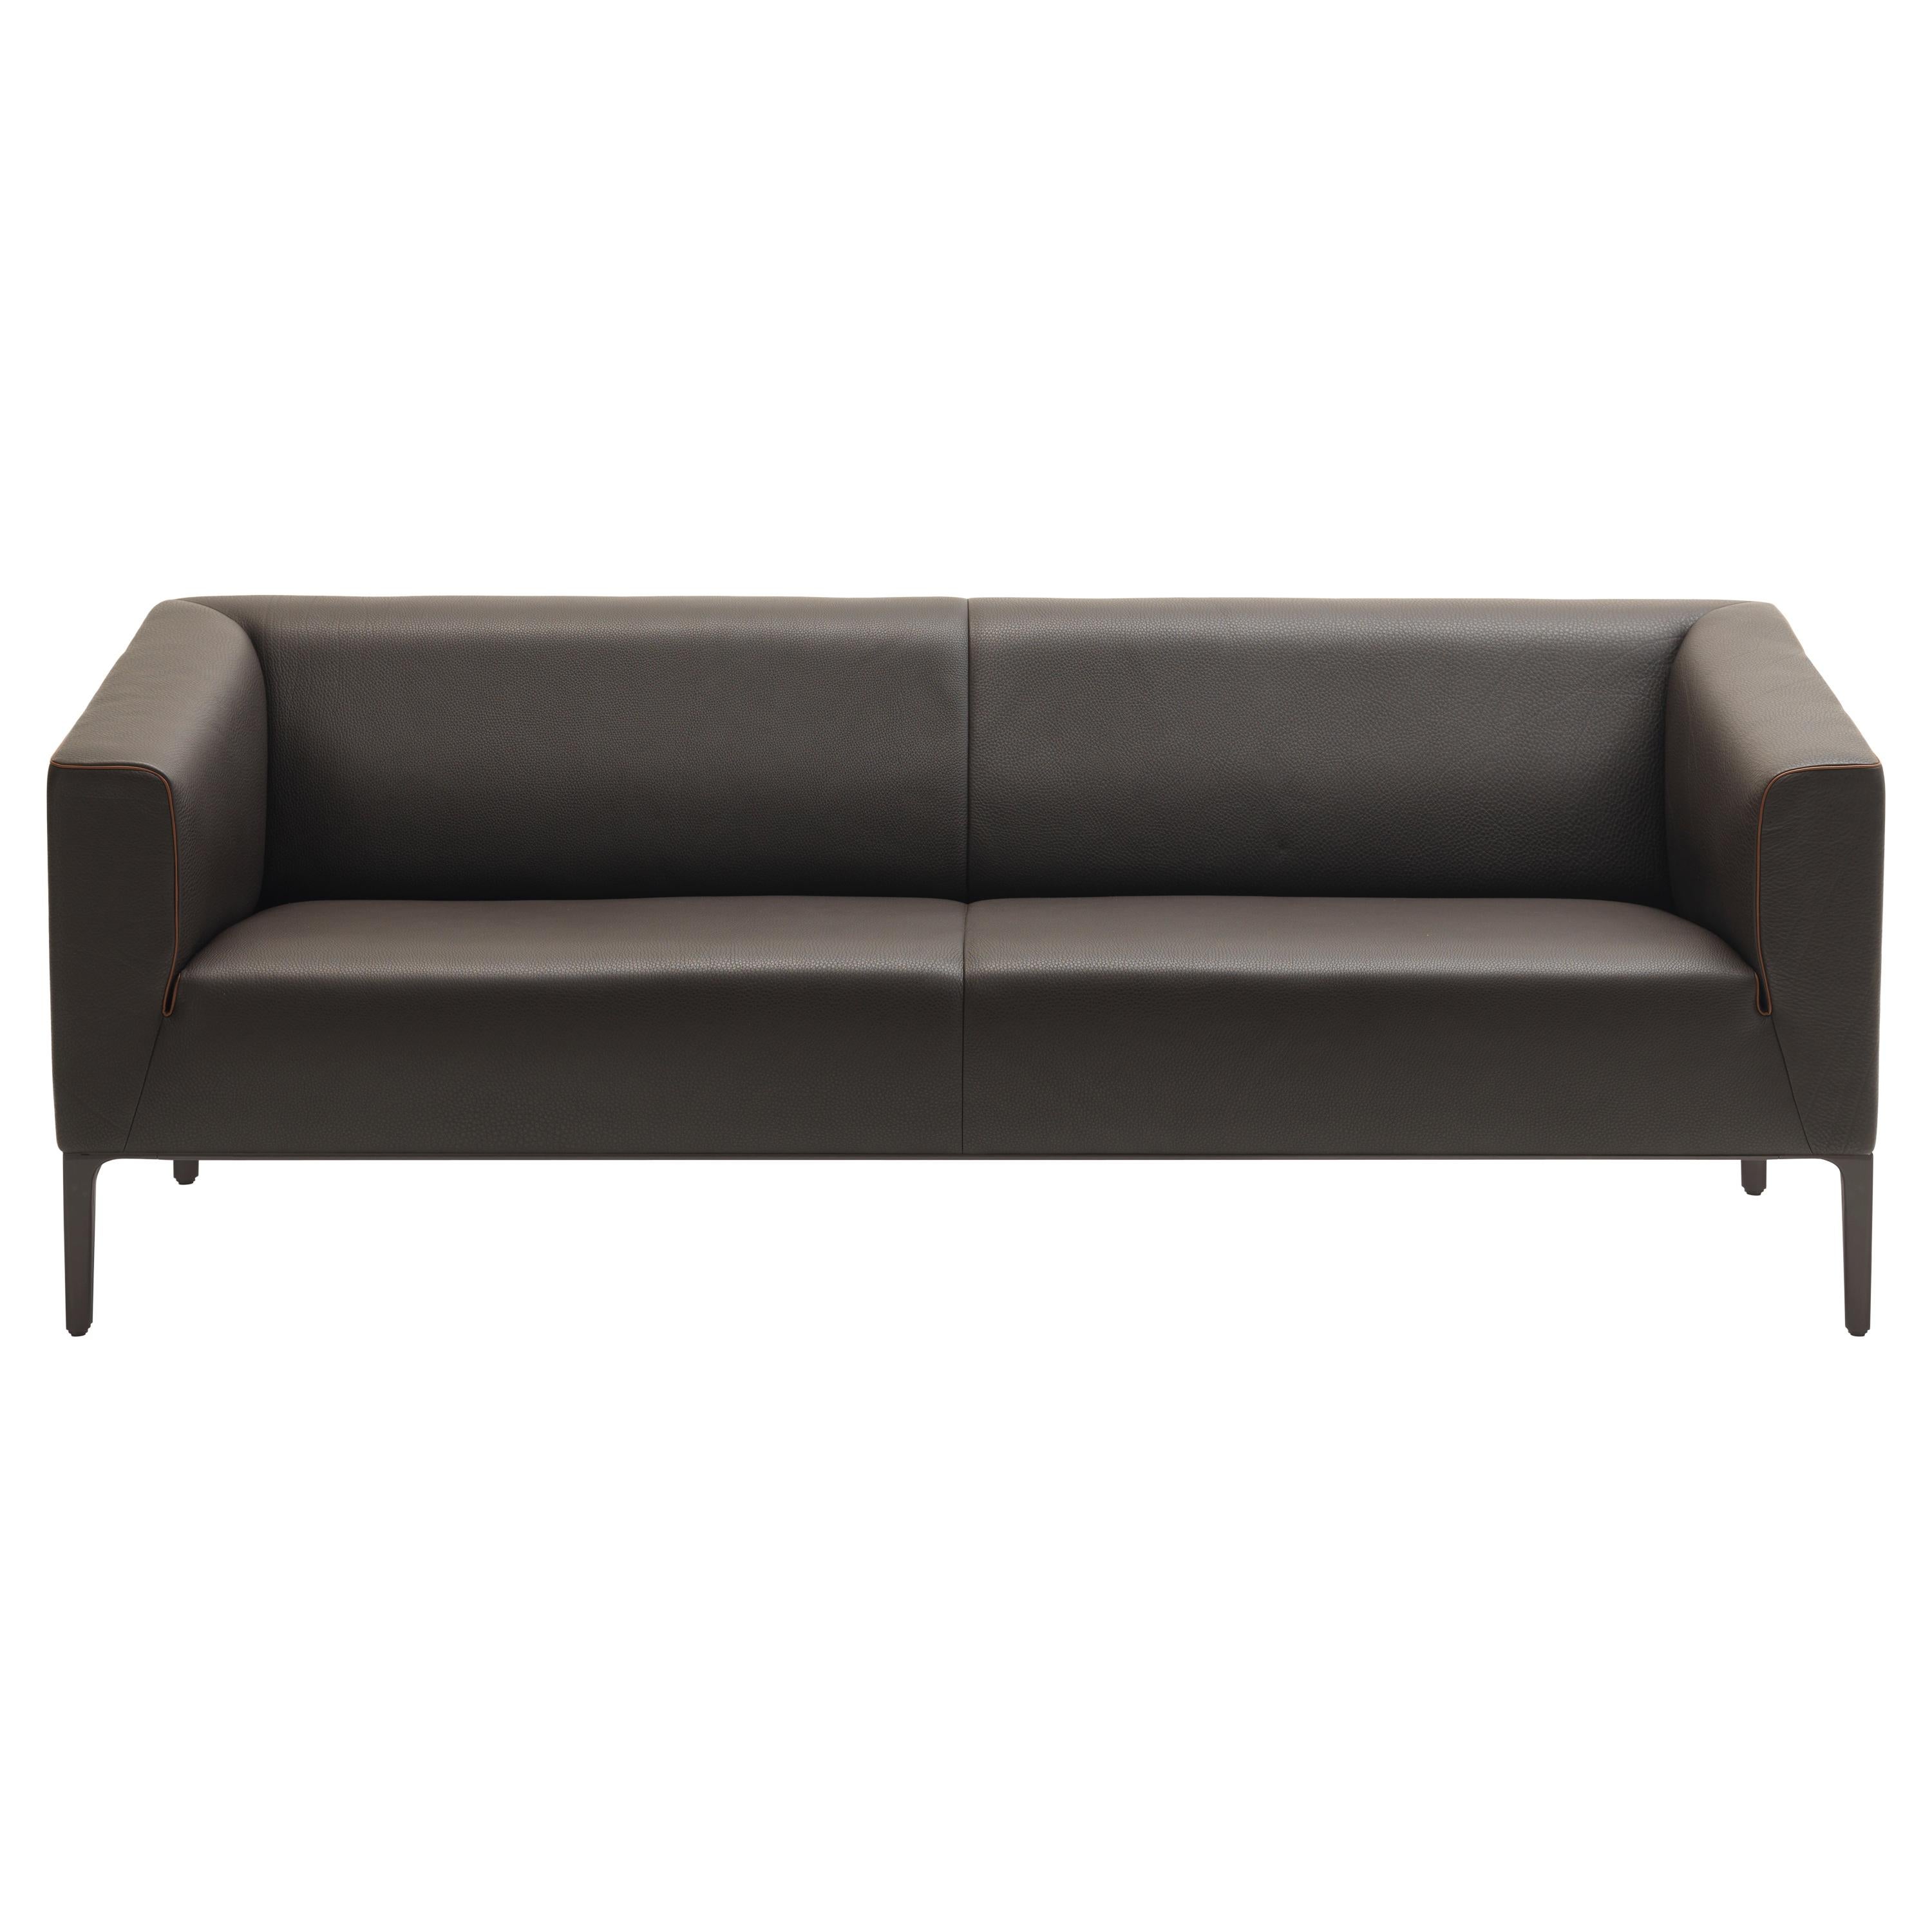 DS-161 Sofa by De Sede For Sale